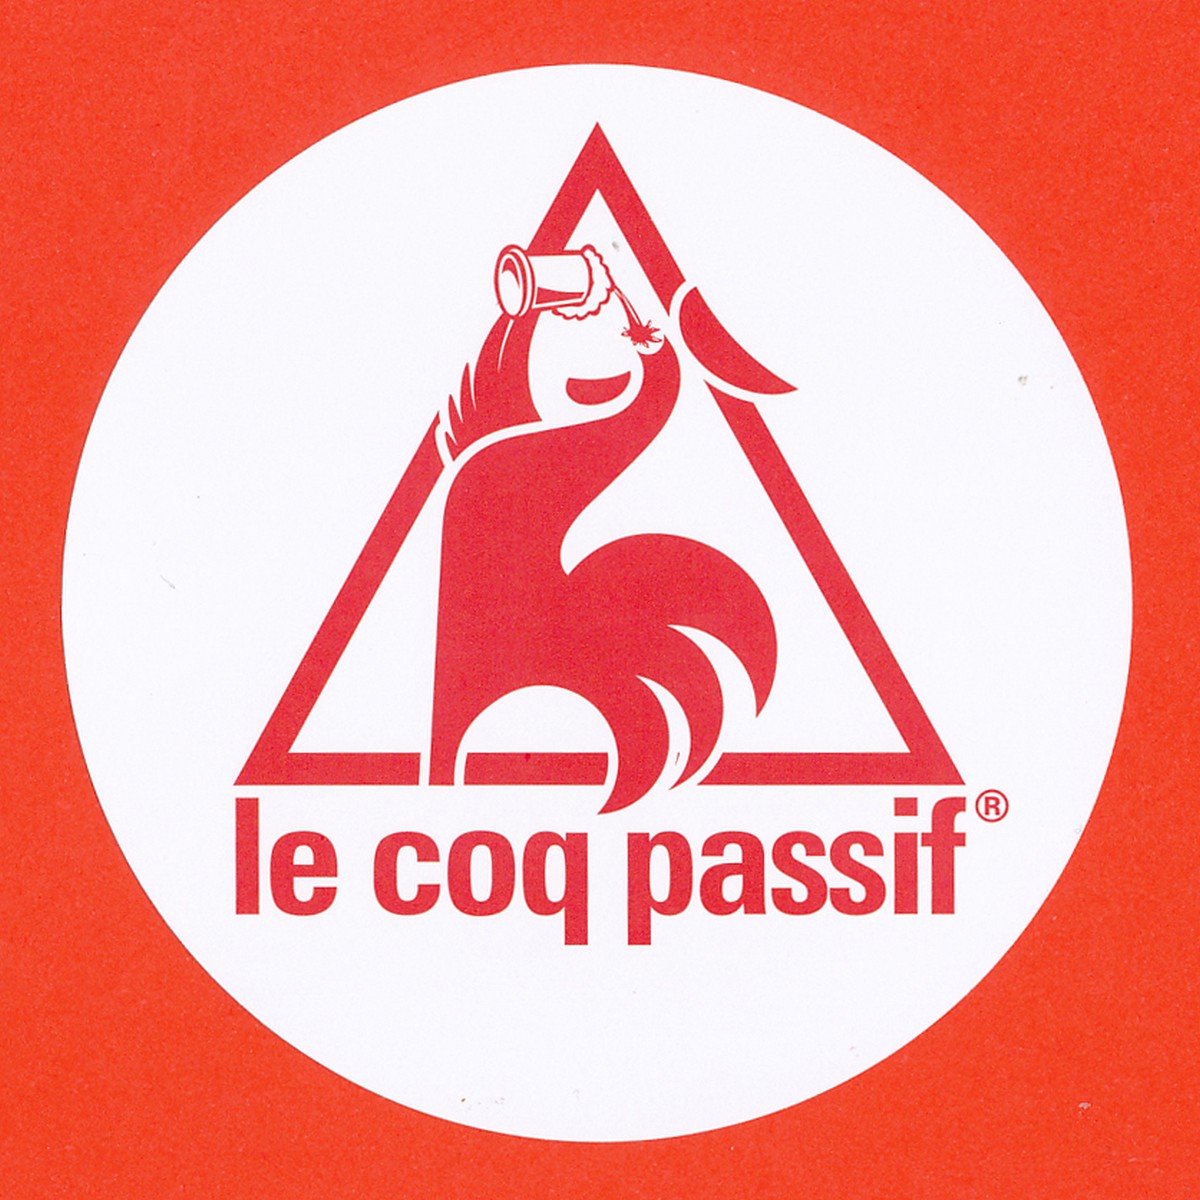 2019 Le Coq Passif sticker